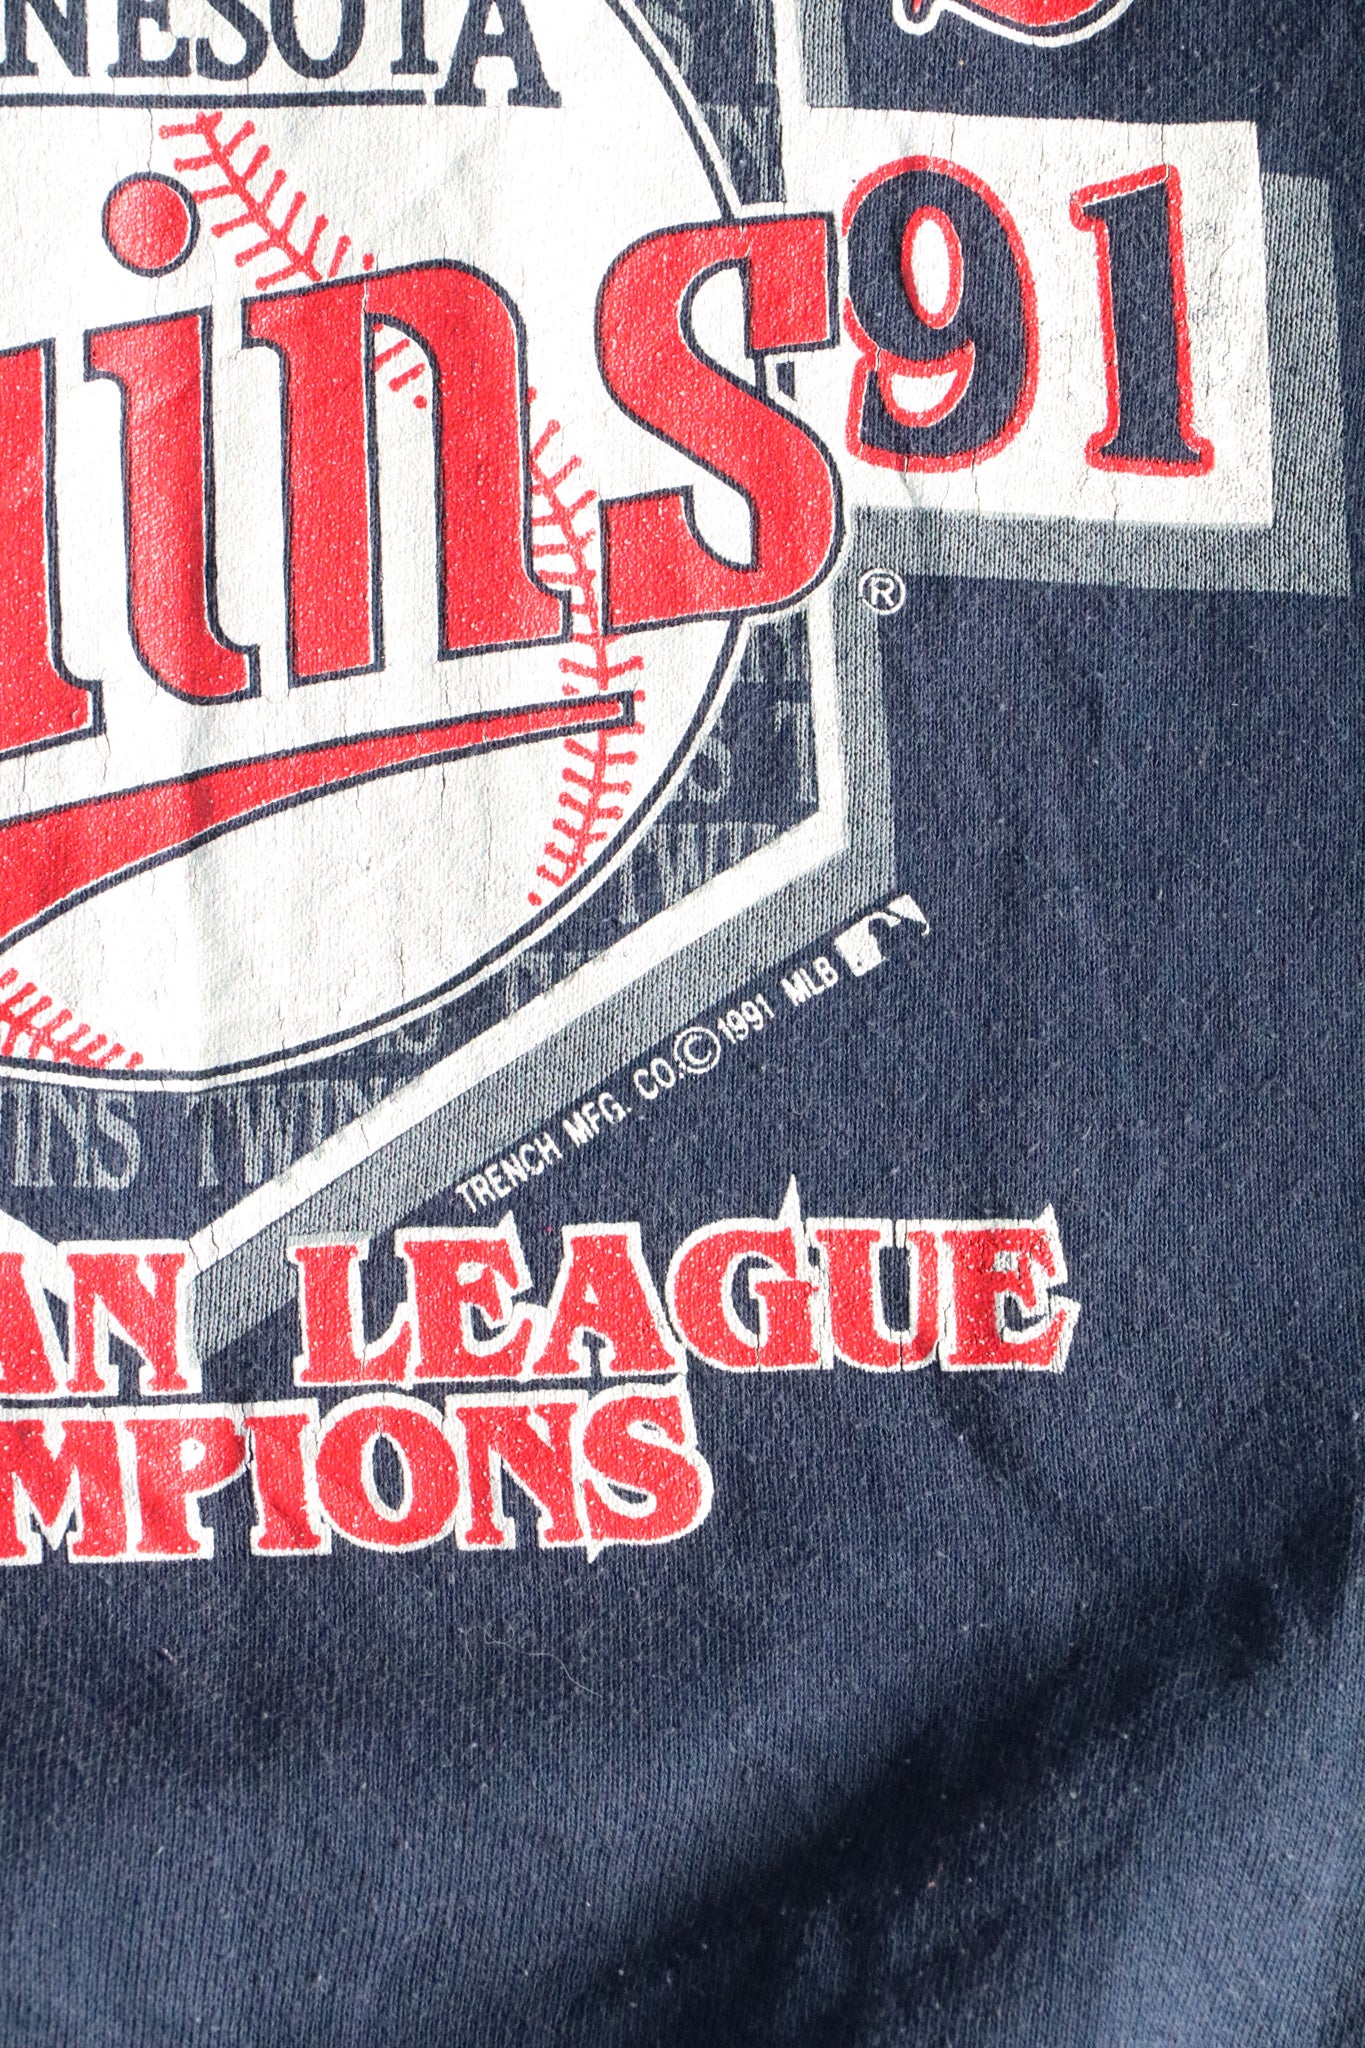 Vintage 1991 MLB Twins World Series Sweater Medium